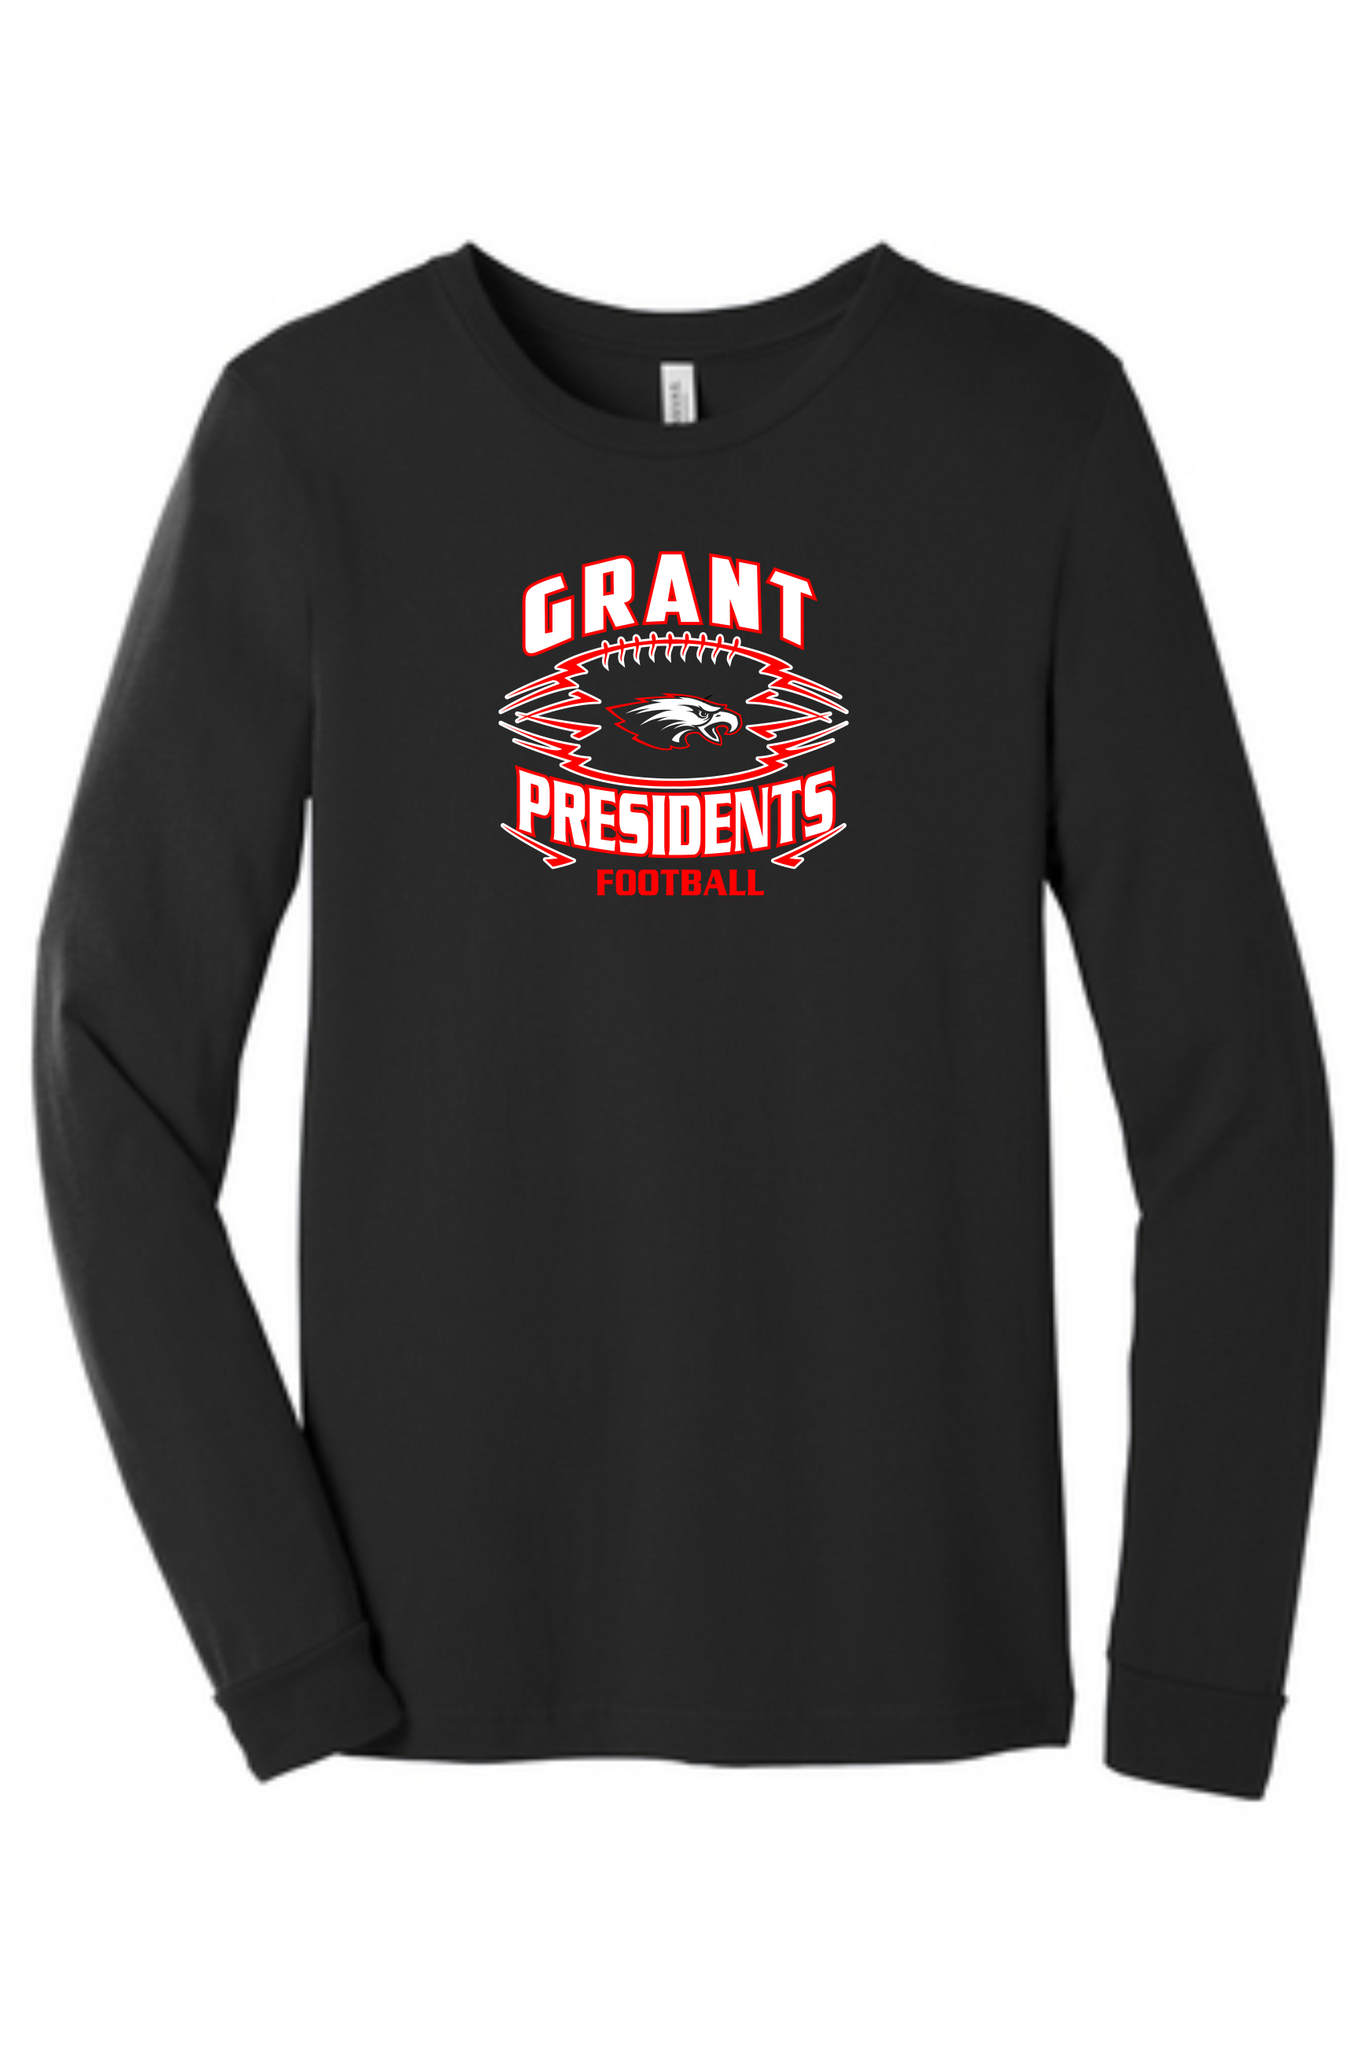 Grant President Football